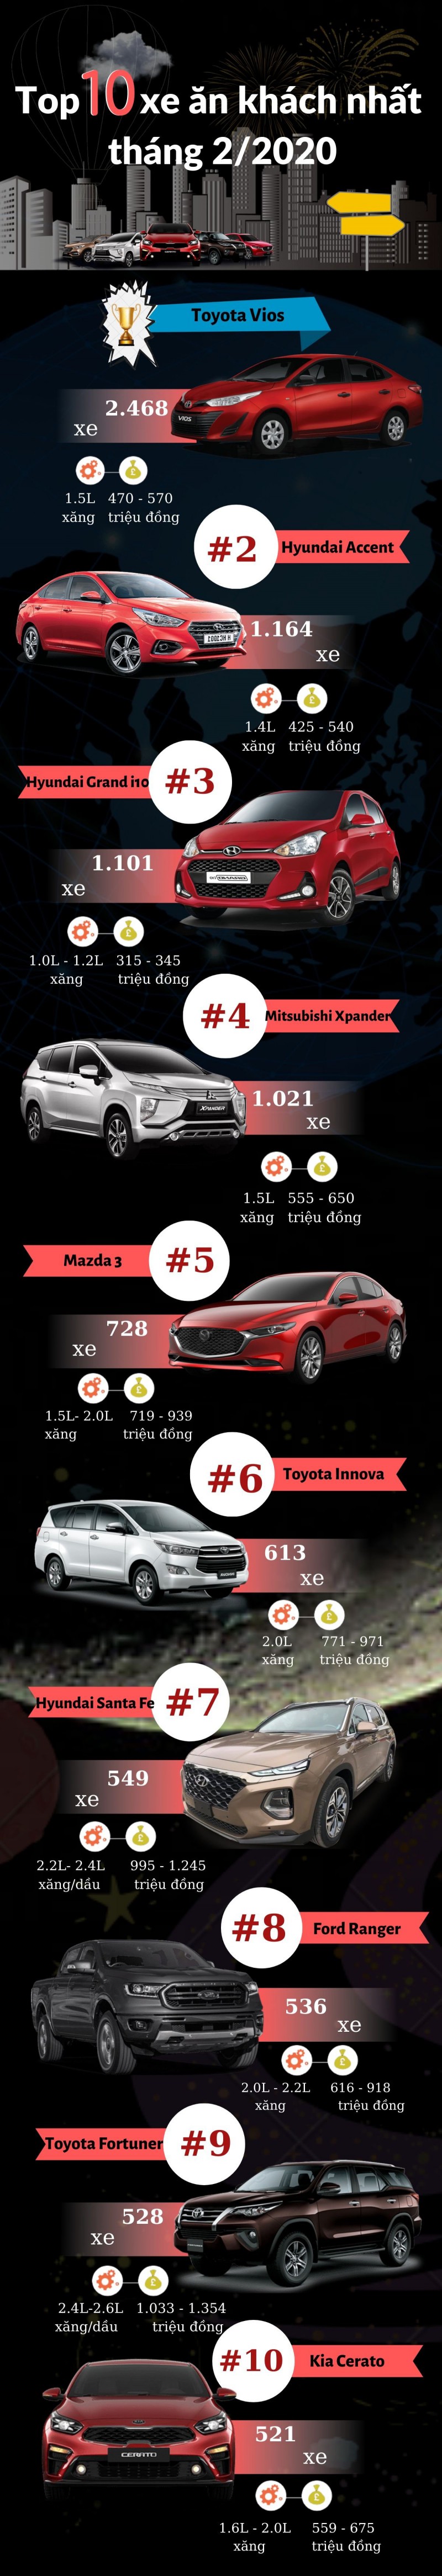 Top 10 xe ô tô bán chạy nhất tháng 2/2020